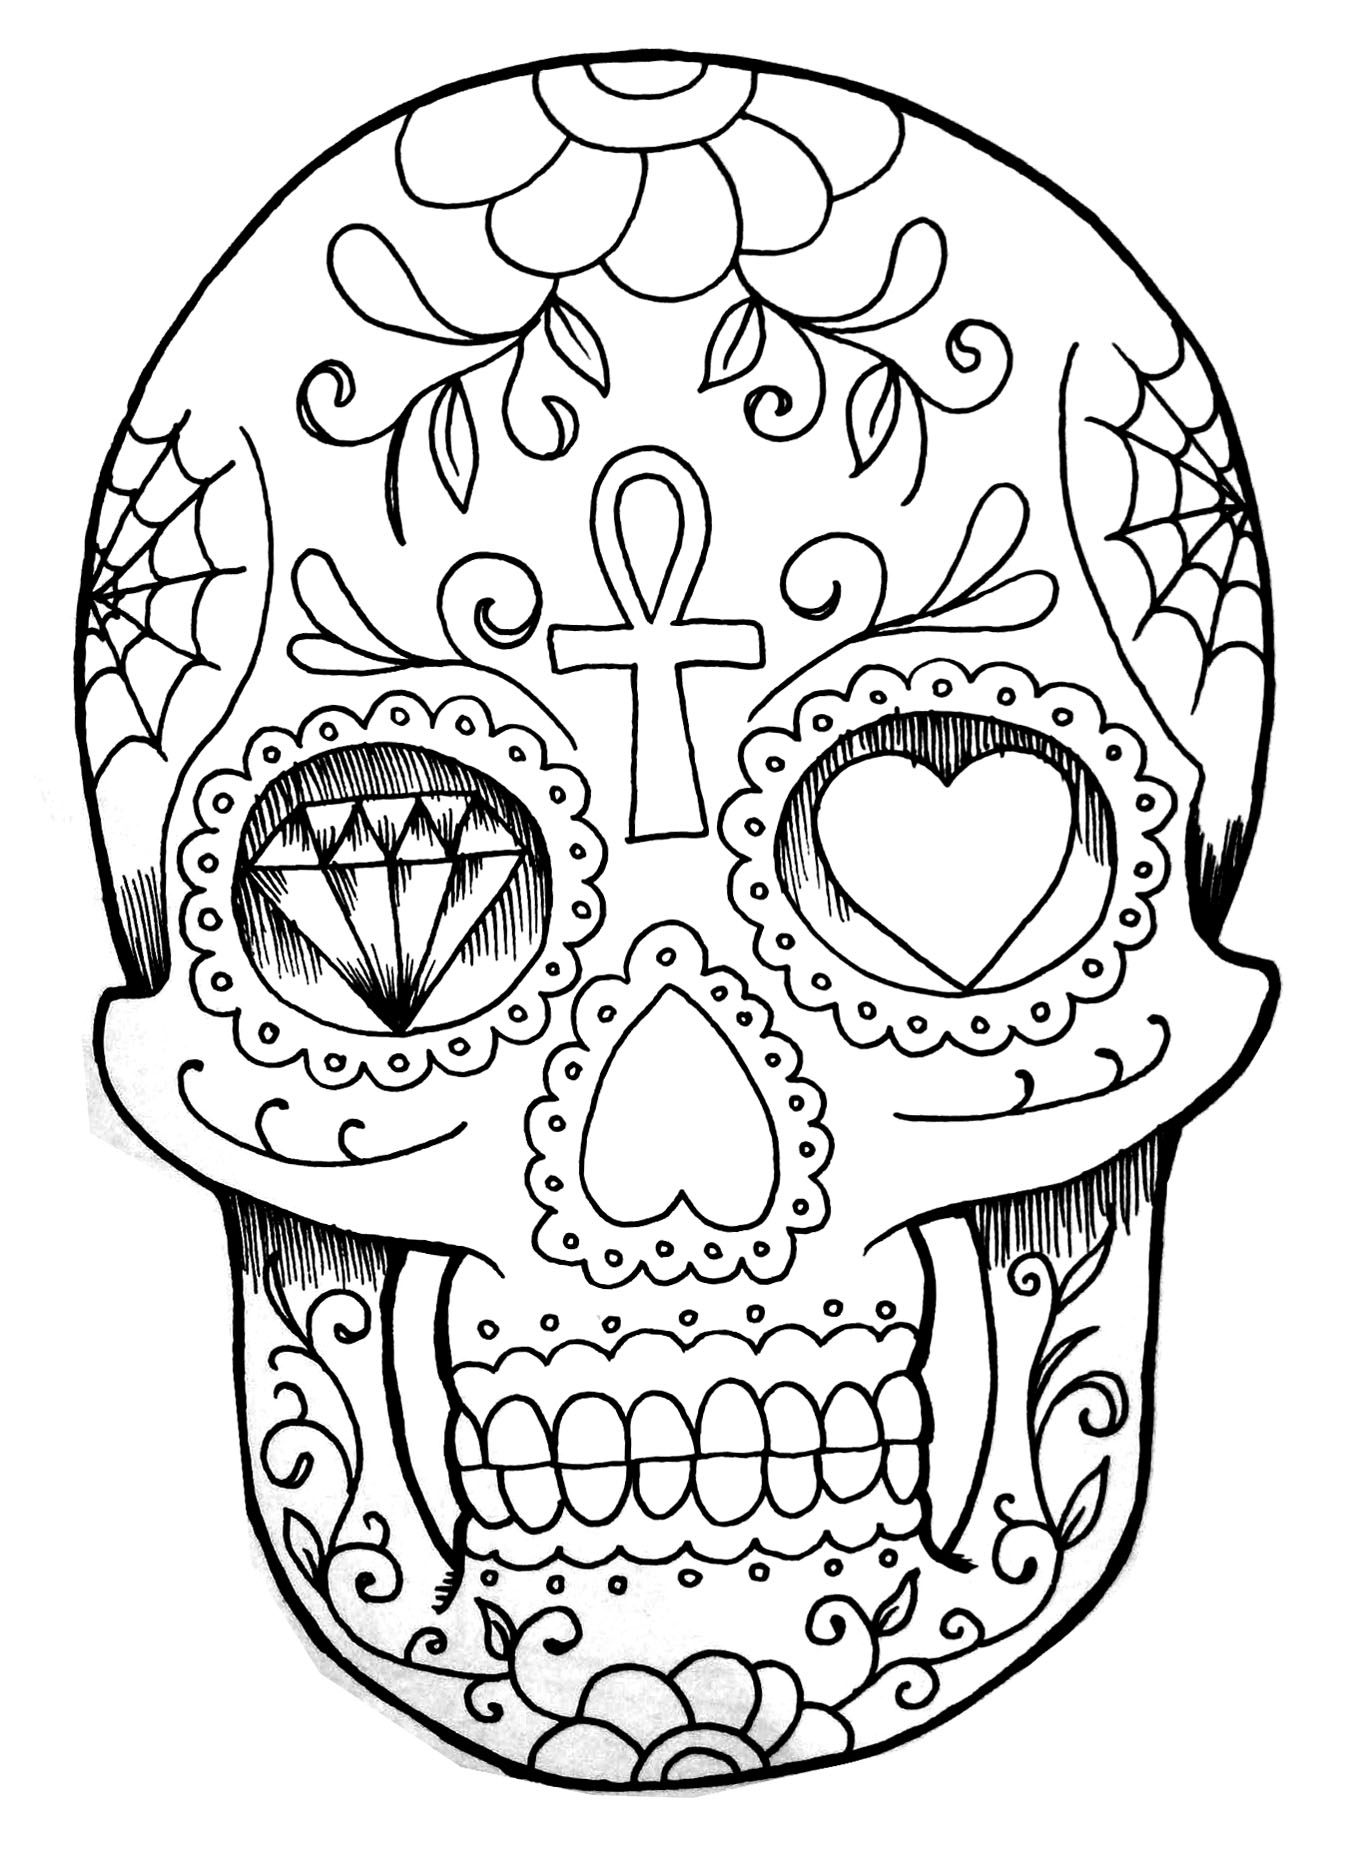 Zeichnung eines menschlichen Schädels, mit verschiedenen Mustern, wie in den Augenhöhlen ein Herz und ein Diamant